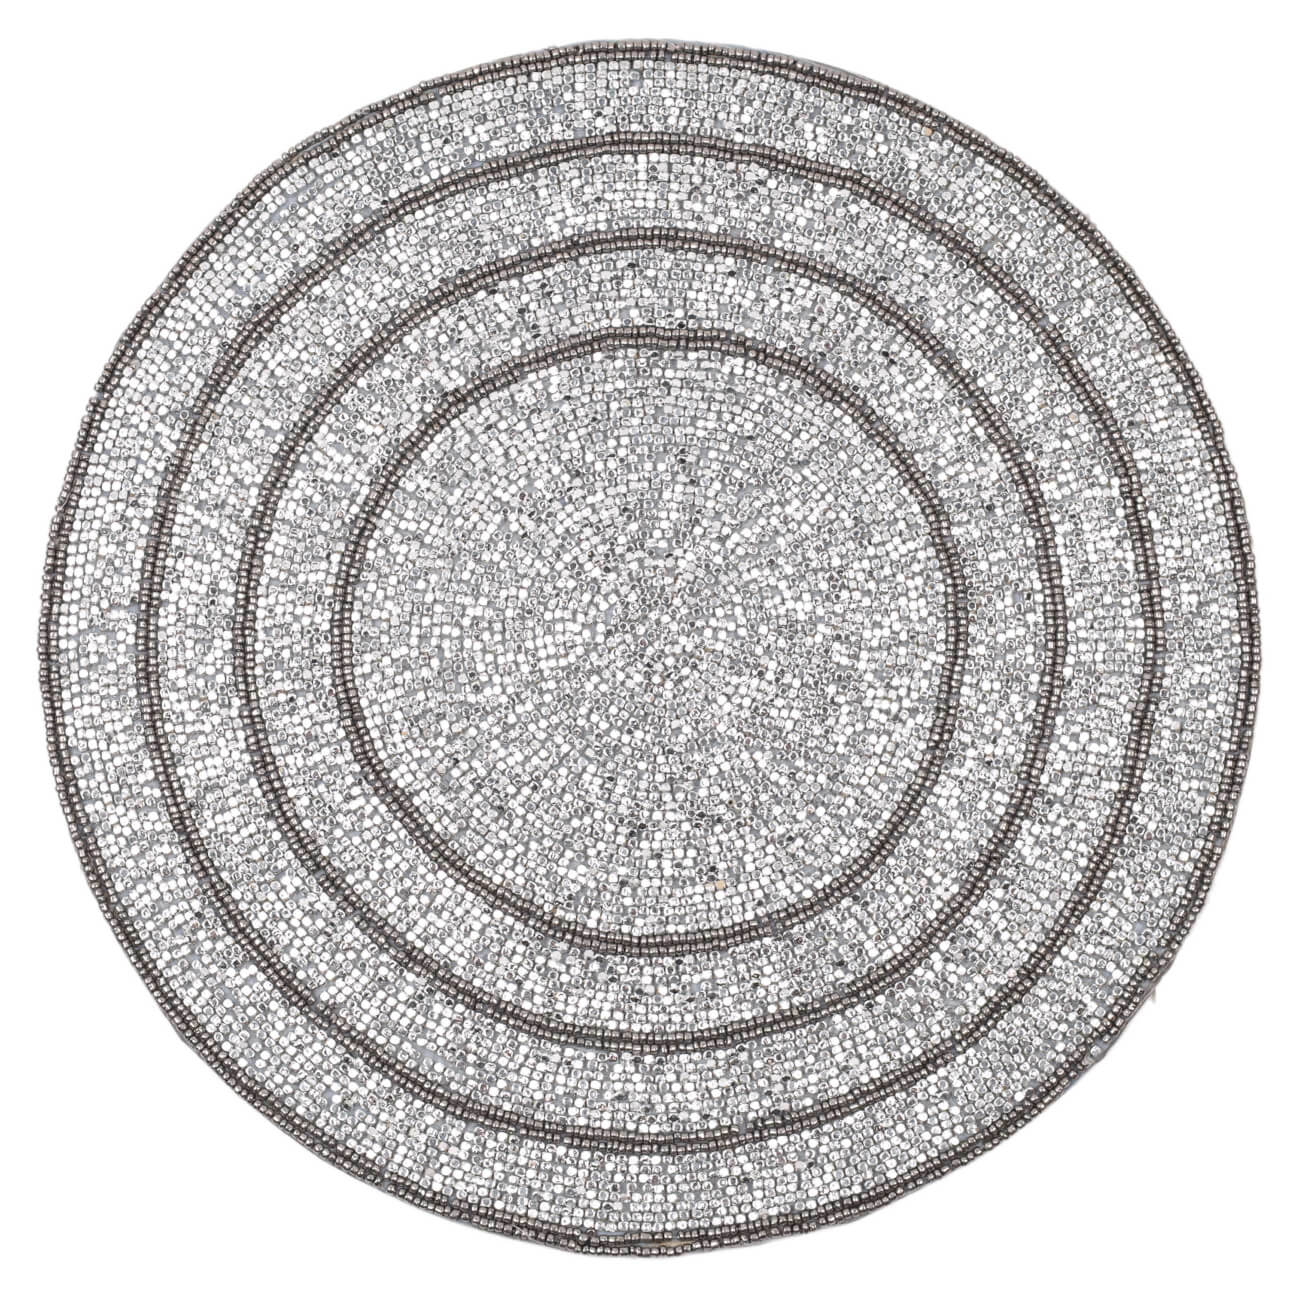 Салфетка под приборы, 36 см, бисер, круглая, серебристо-серая, Shiny stone изображение № 1